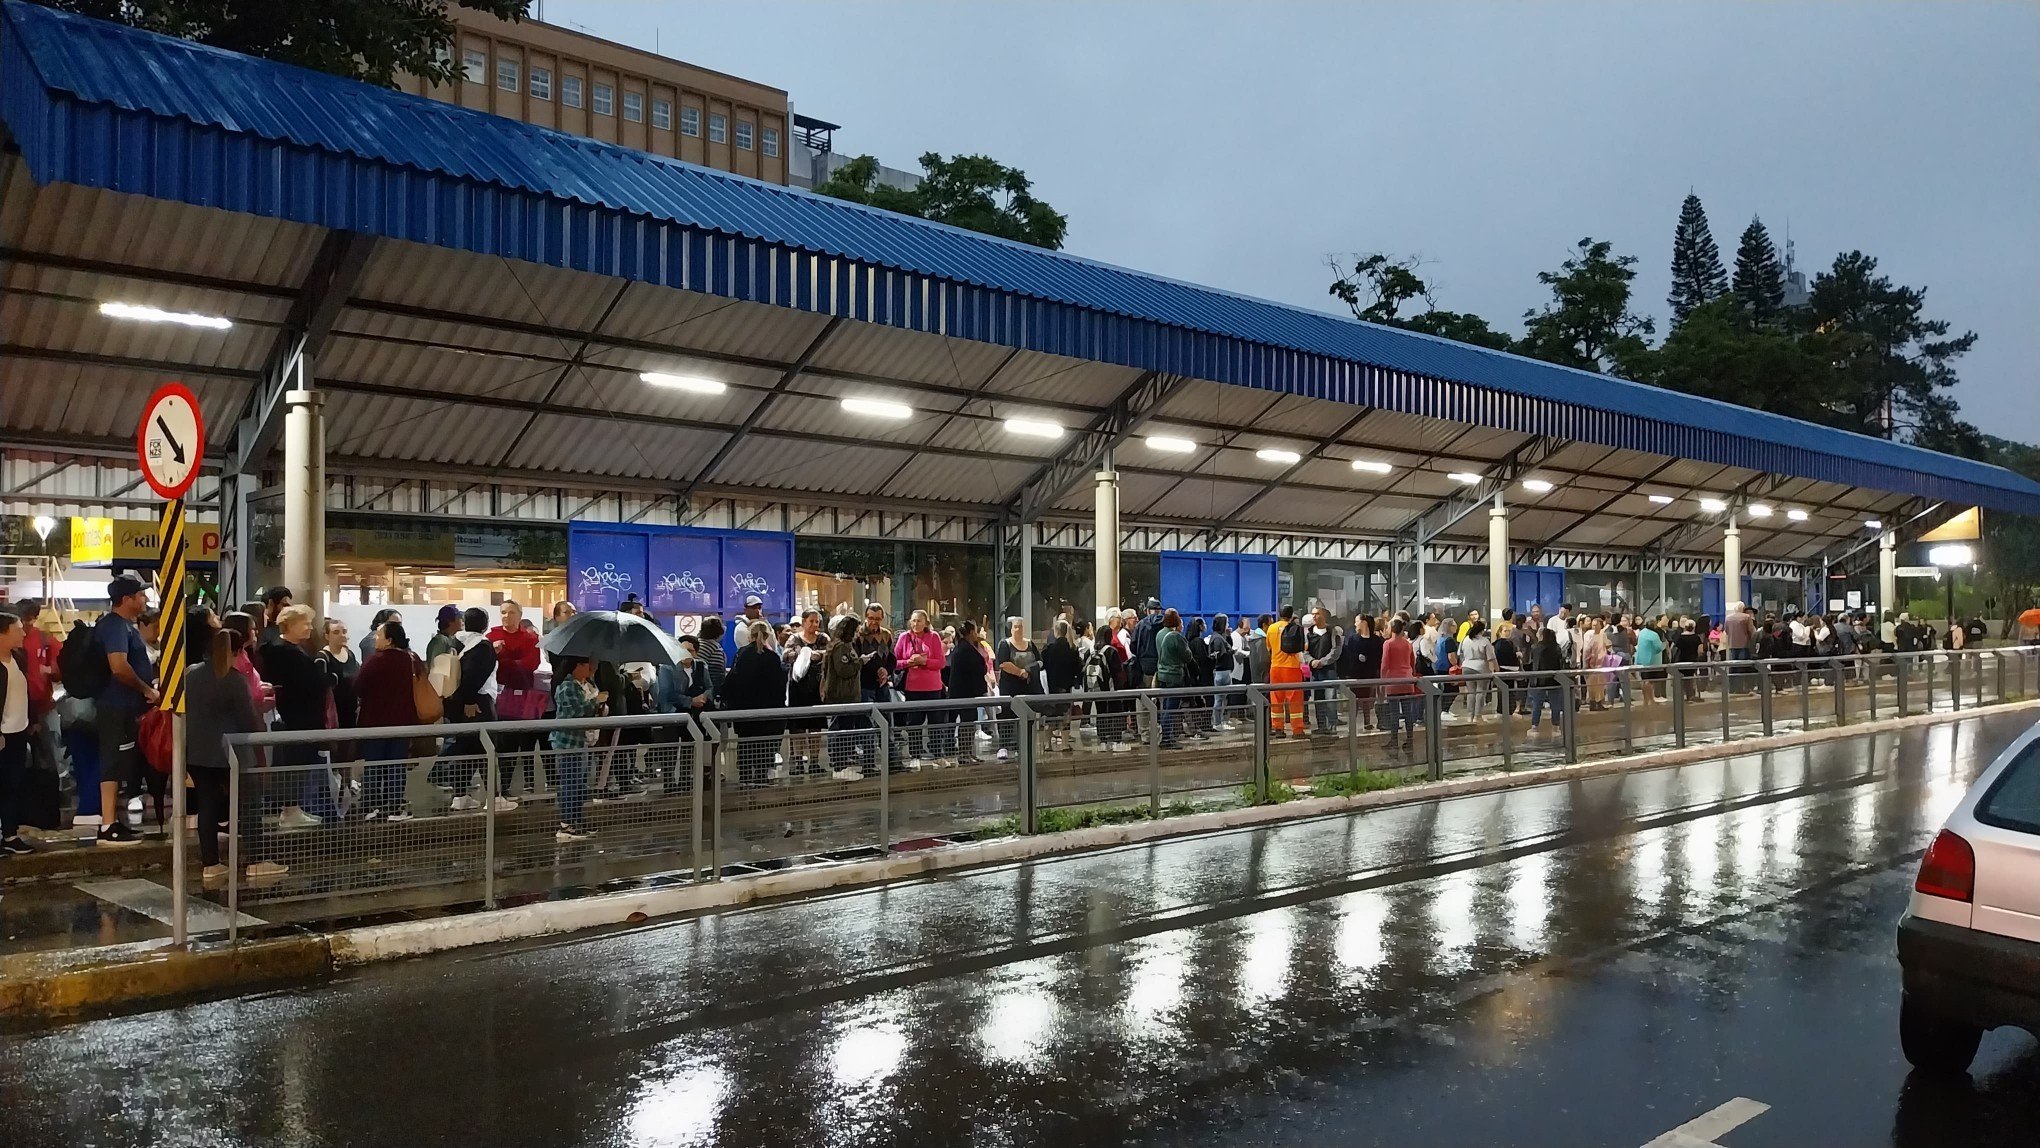 NOVO HAMBURGO: Usuários relatam até duas horas de espera por ônibus no paradão; veja fotos